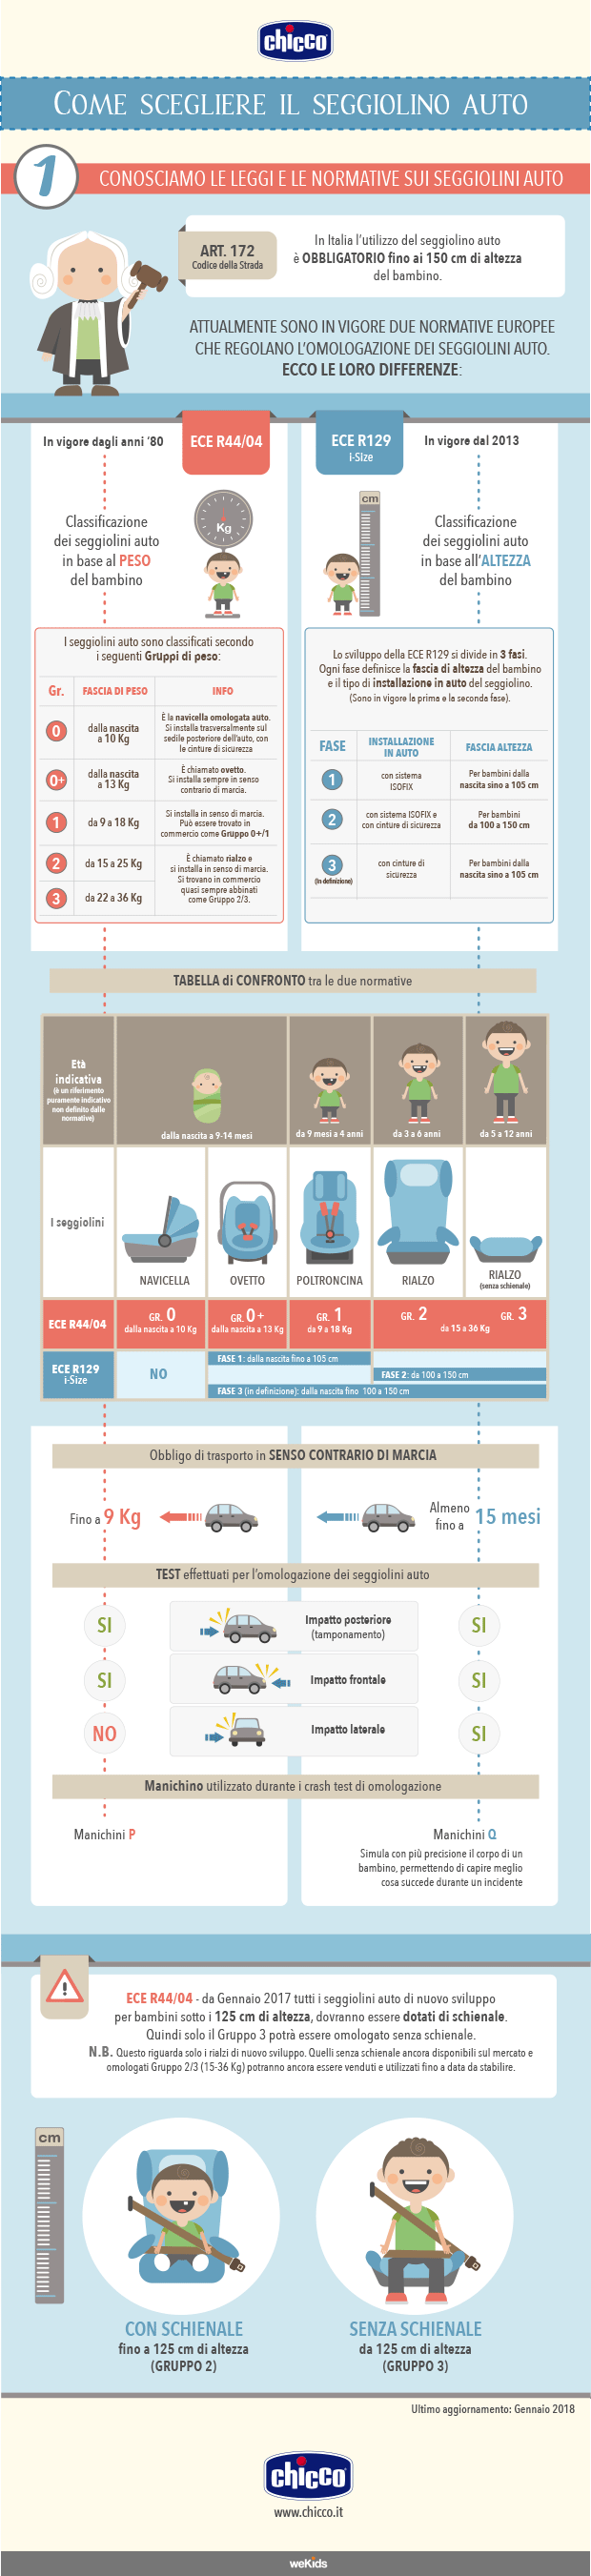 Infografica su come scegliere il seggiolino auto secondo le normative ECE R44/04 e R129, tutti i consigli da Chicco